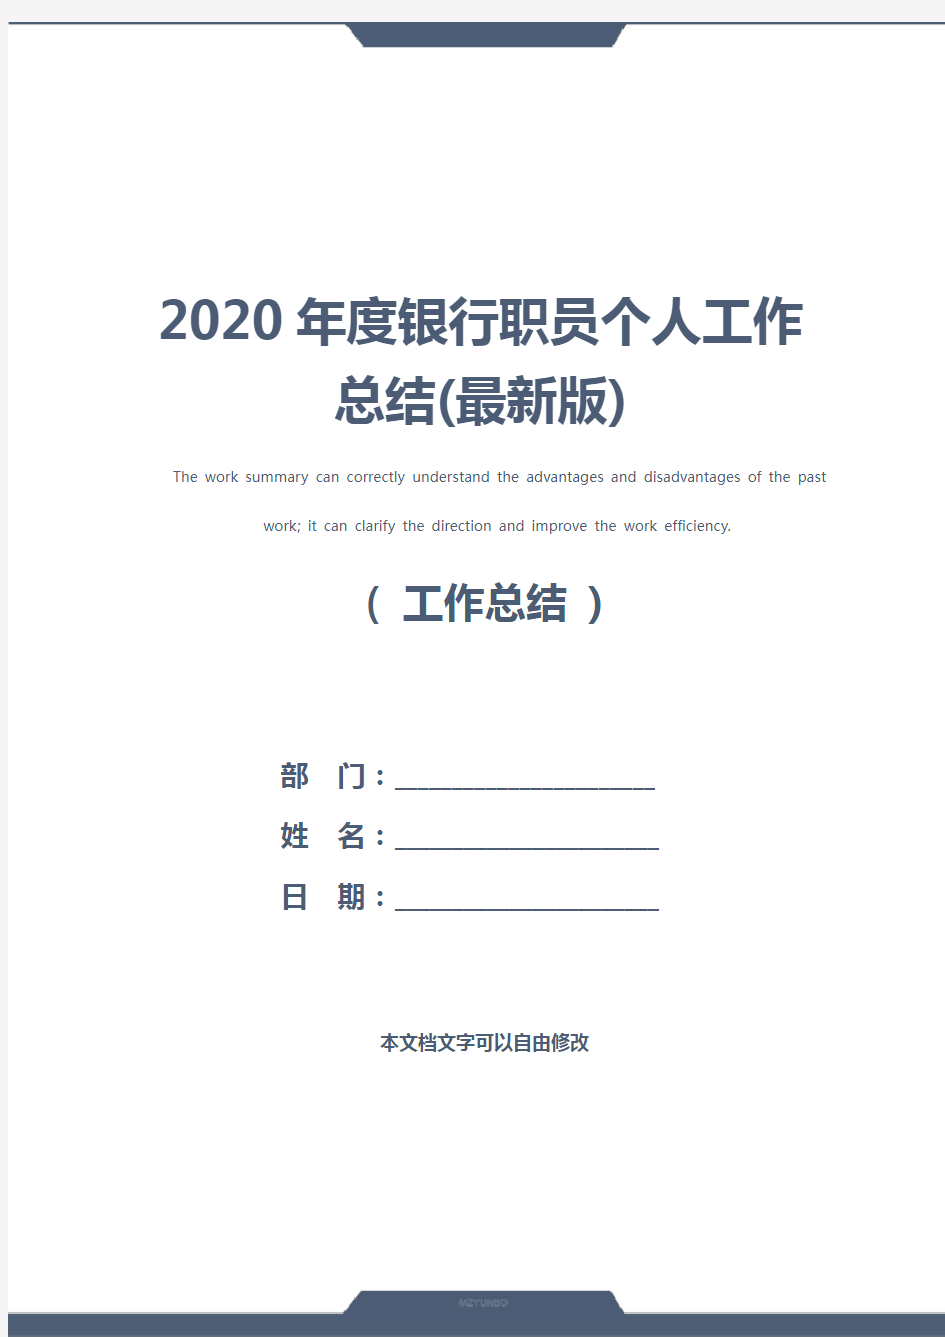 2020年度银行职员个人工作总结(最新版)